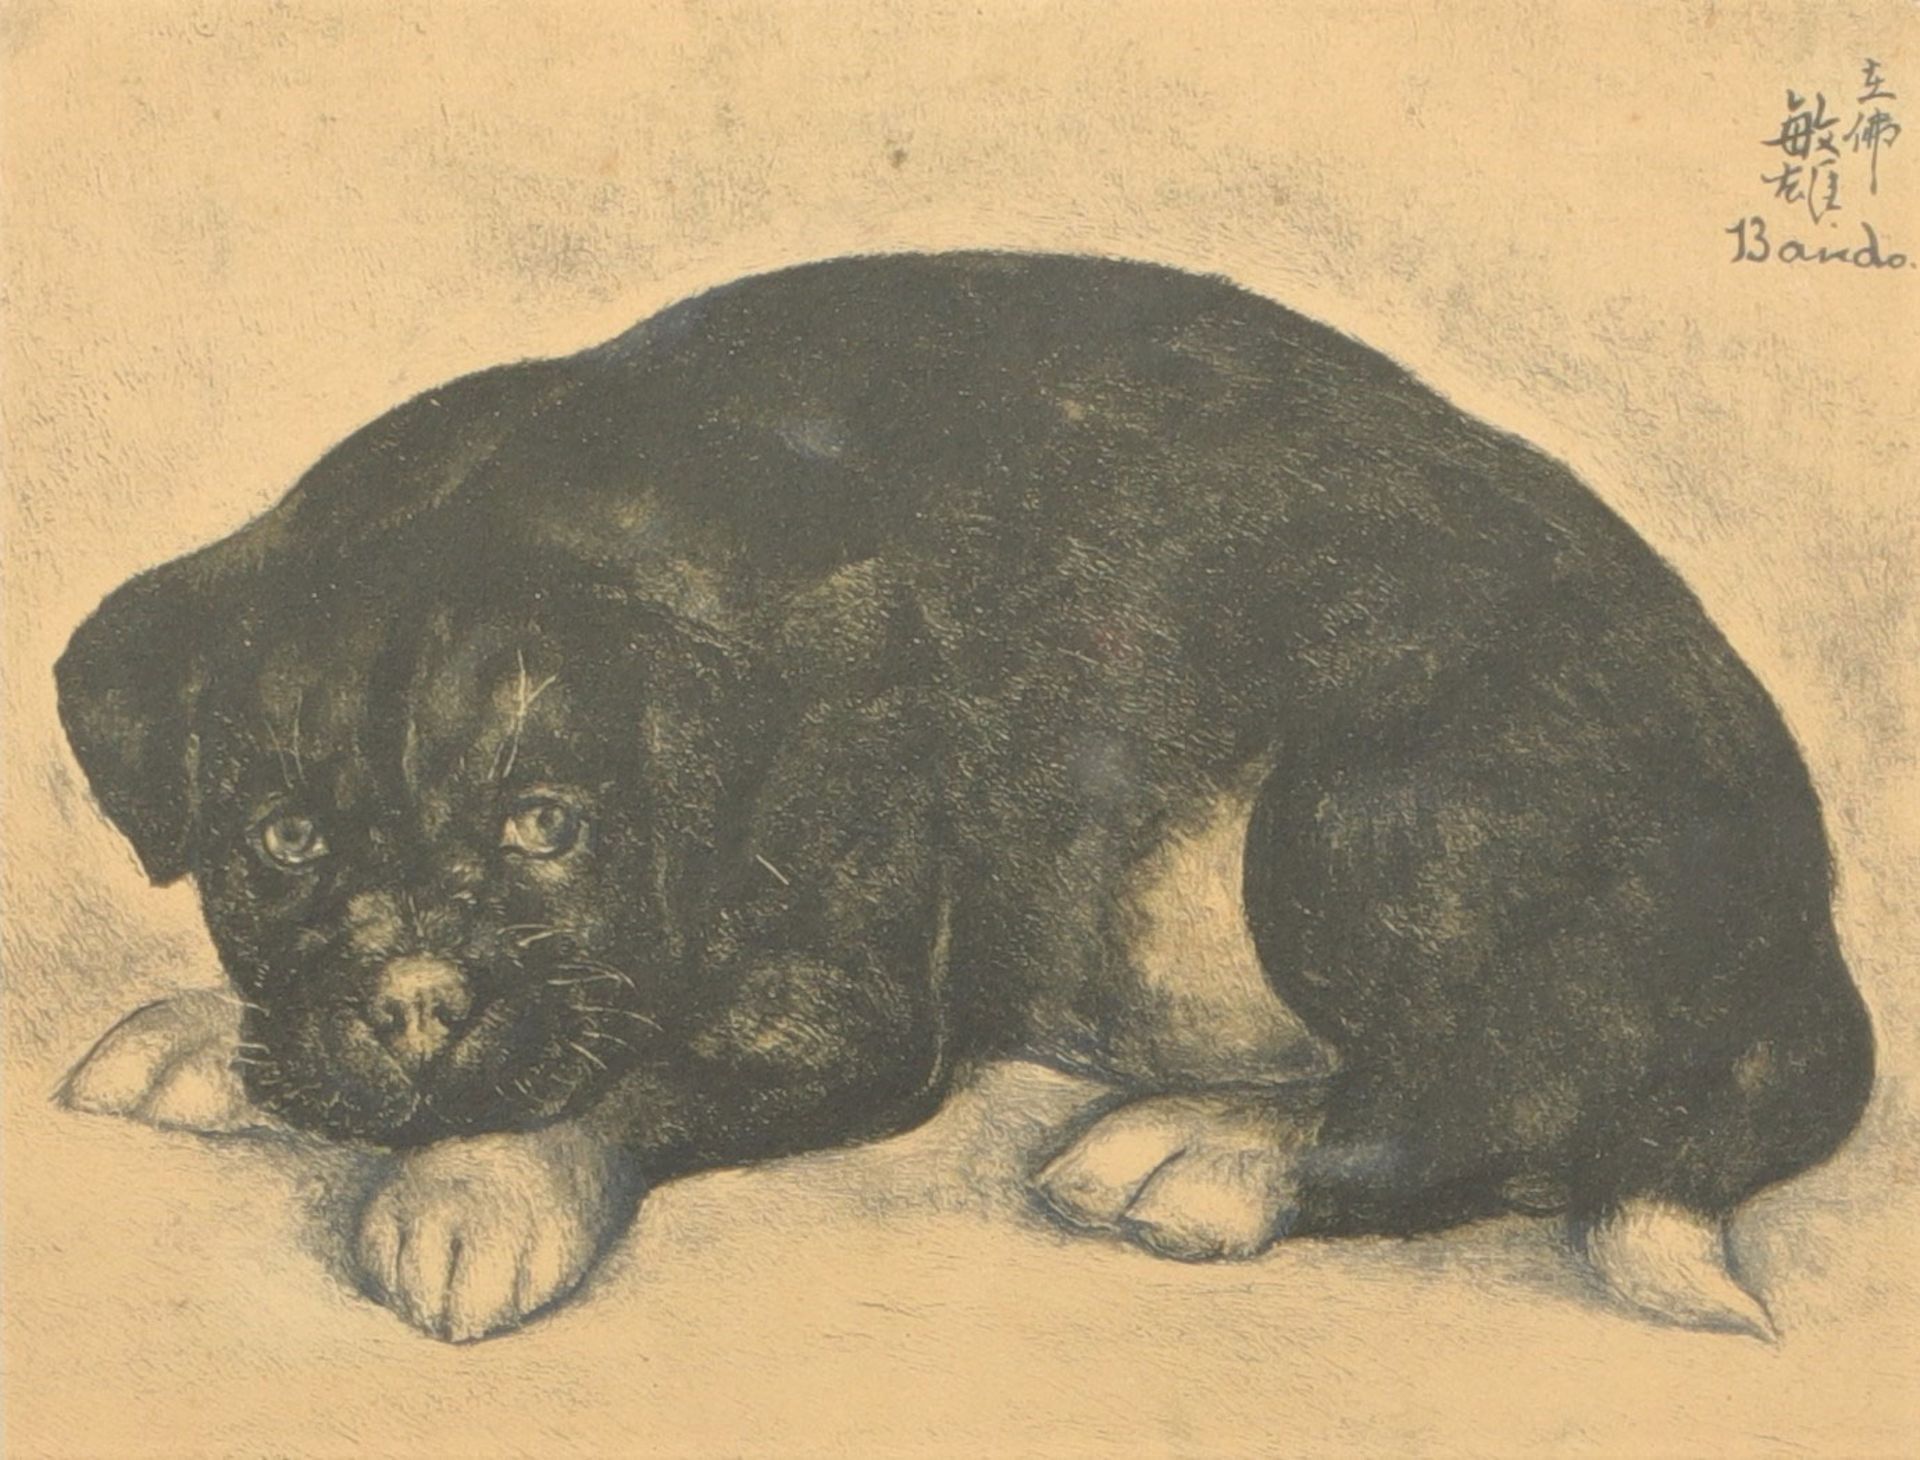 Tochio Bando (1895-1973) lithograph "young dog"